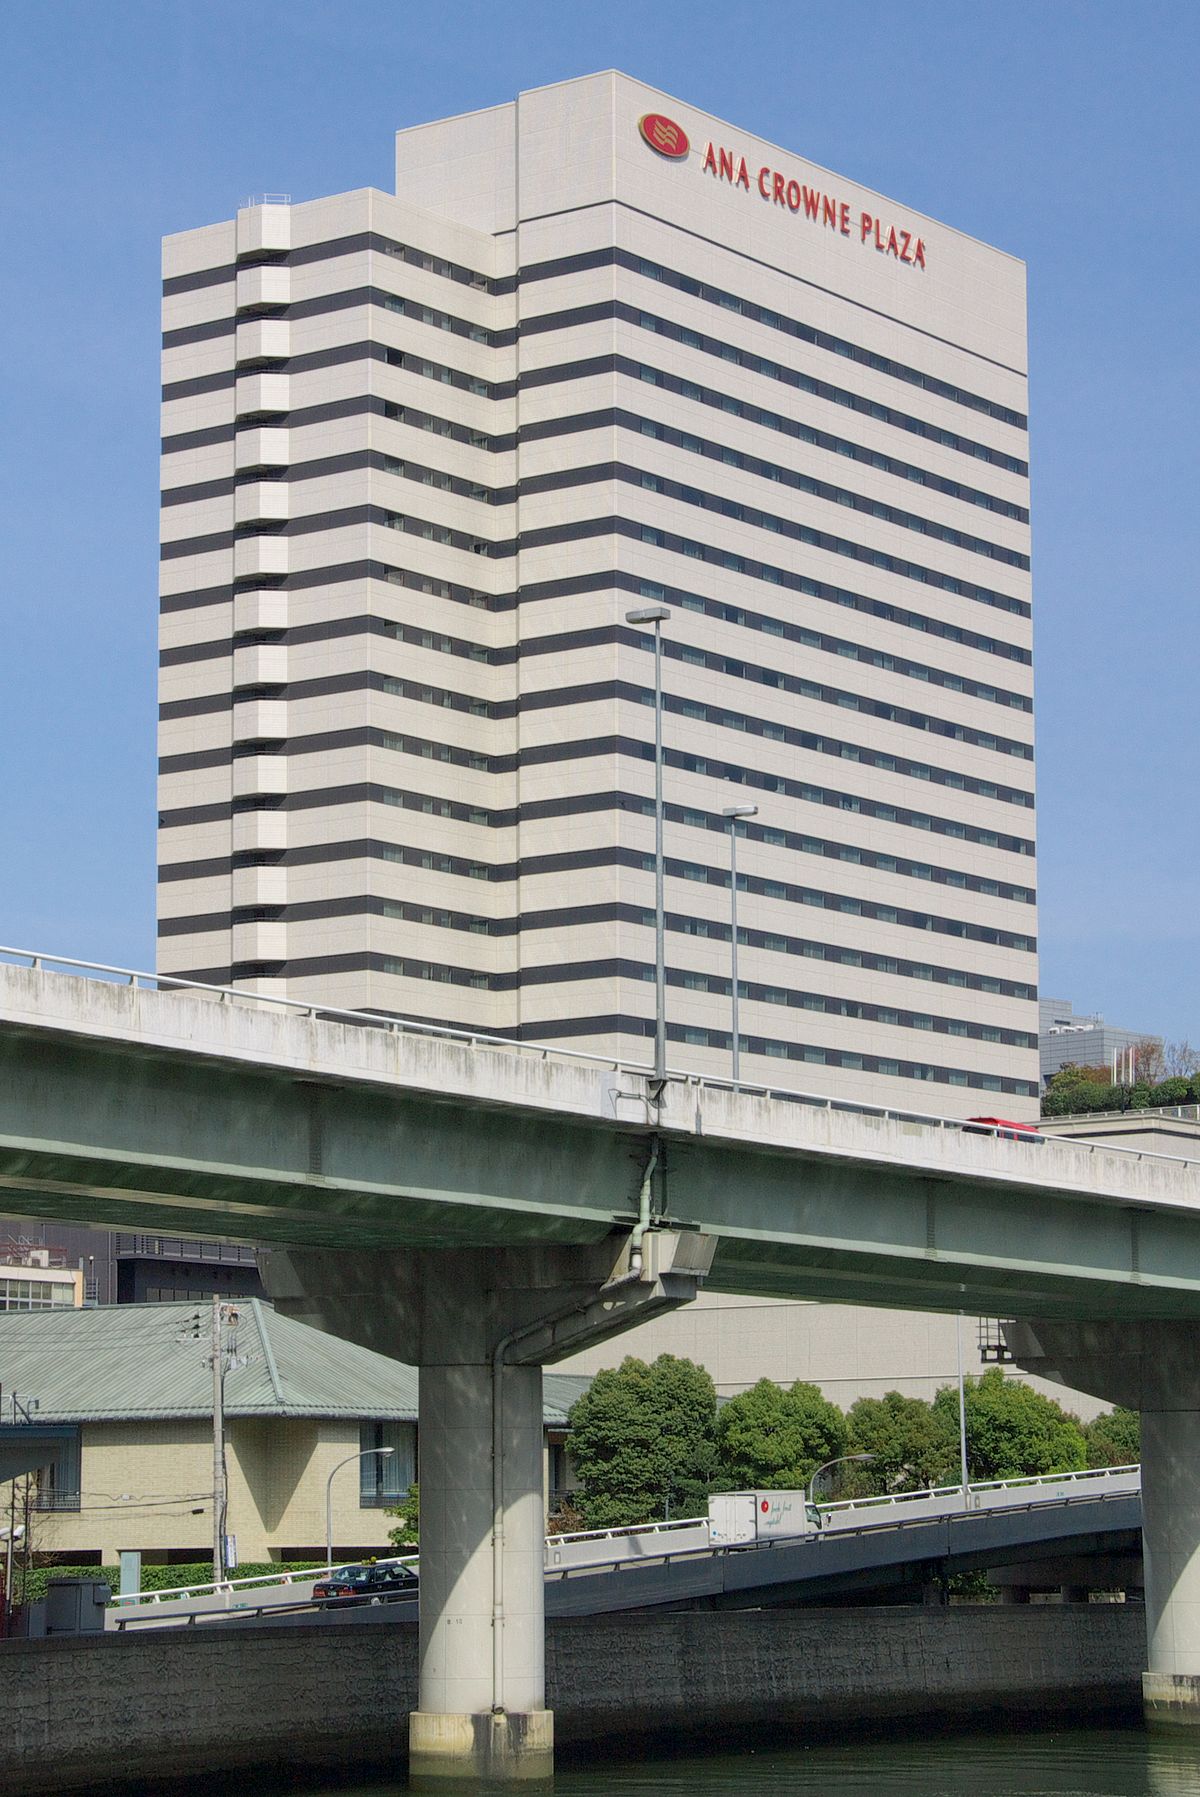 Anaクラウンプラザホテル大阪 Wikipedia